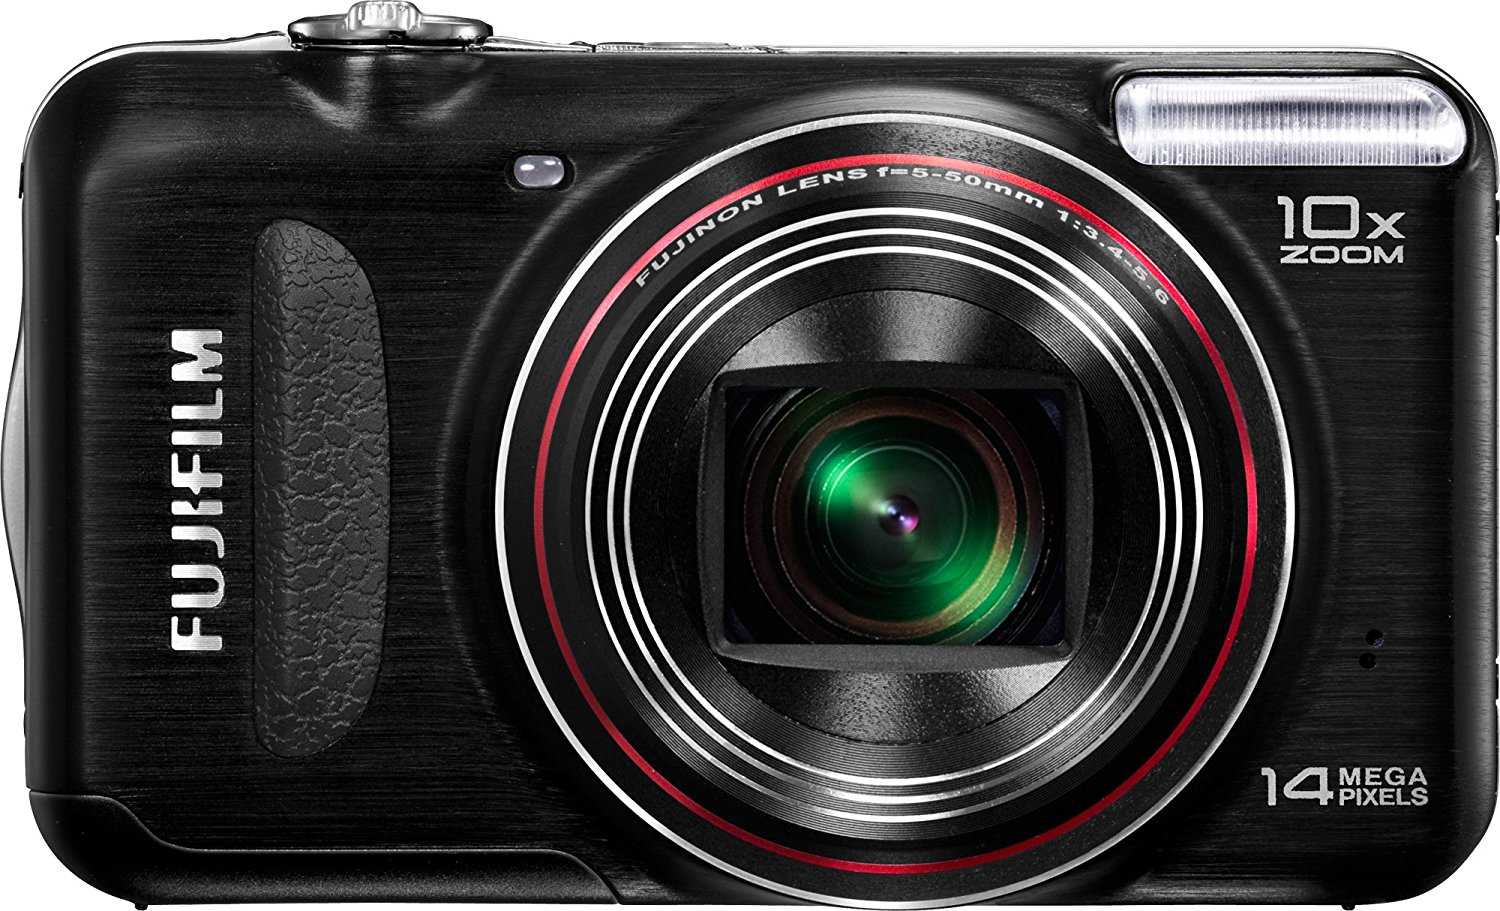 Цифровой фотоаппарат Fujifilm FinePix T300 - подробные характеристики обзоры видео фото Цены в интернет-магазинах где можно купить цифровую фотоаппарат Fujifilm FinePix T300